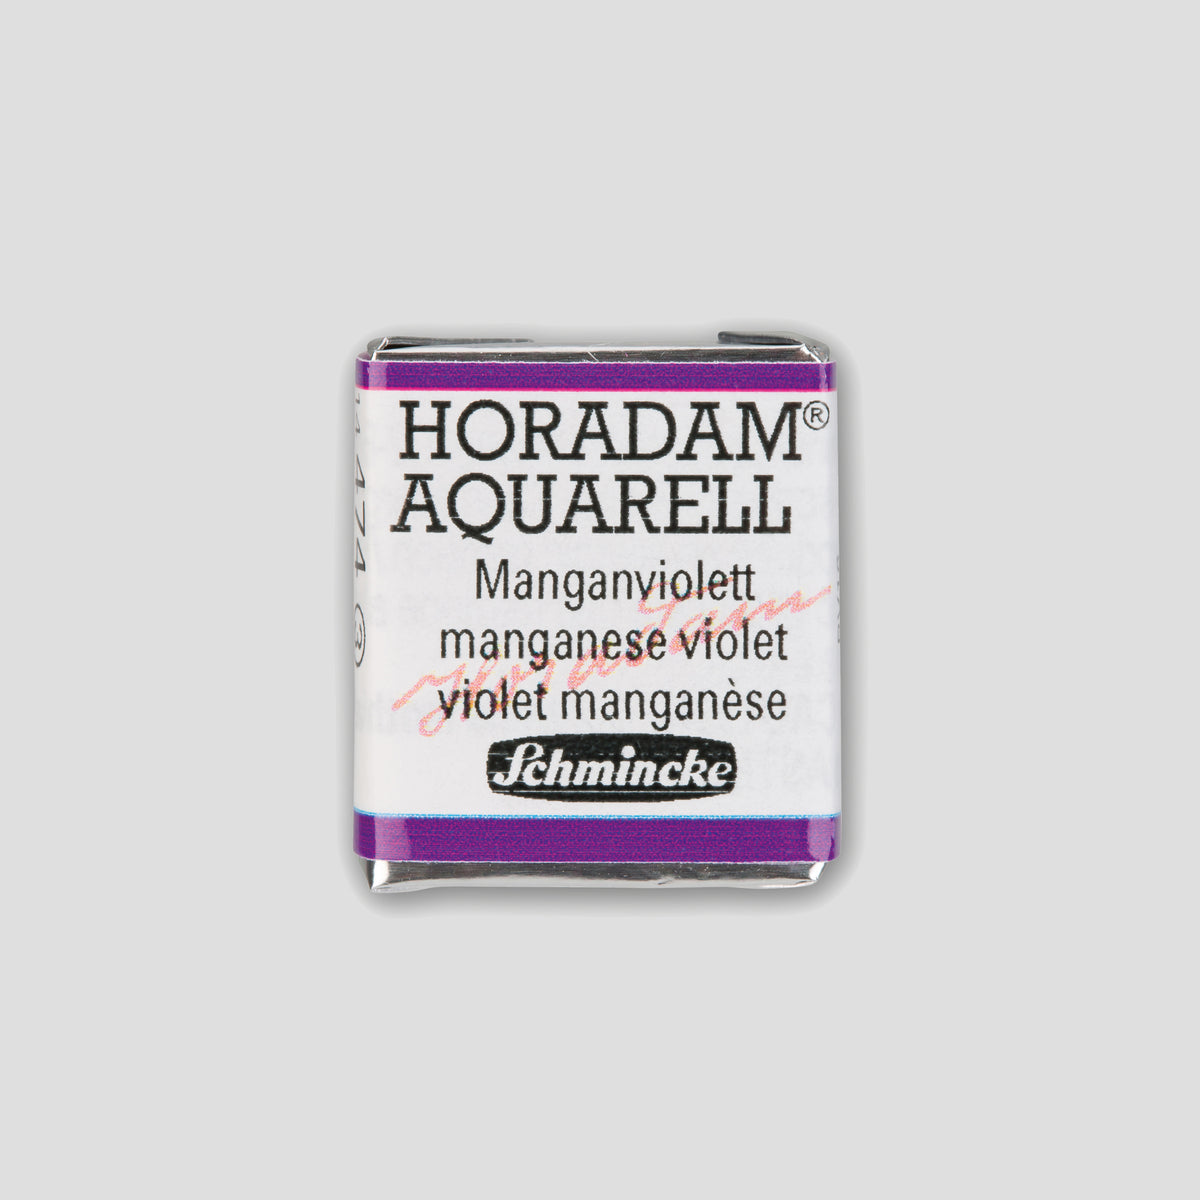 Schmincke Horadam® Halbpfanne Manganviolett